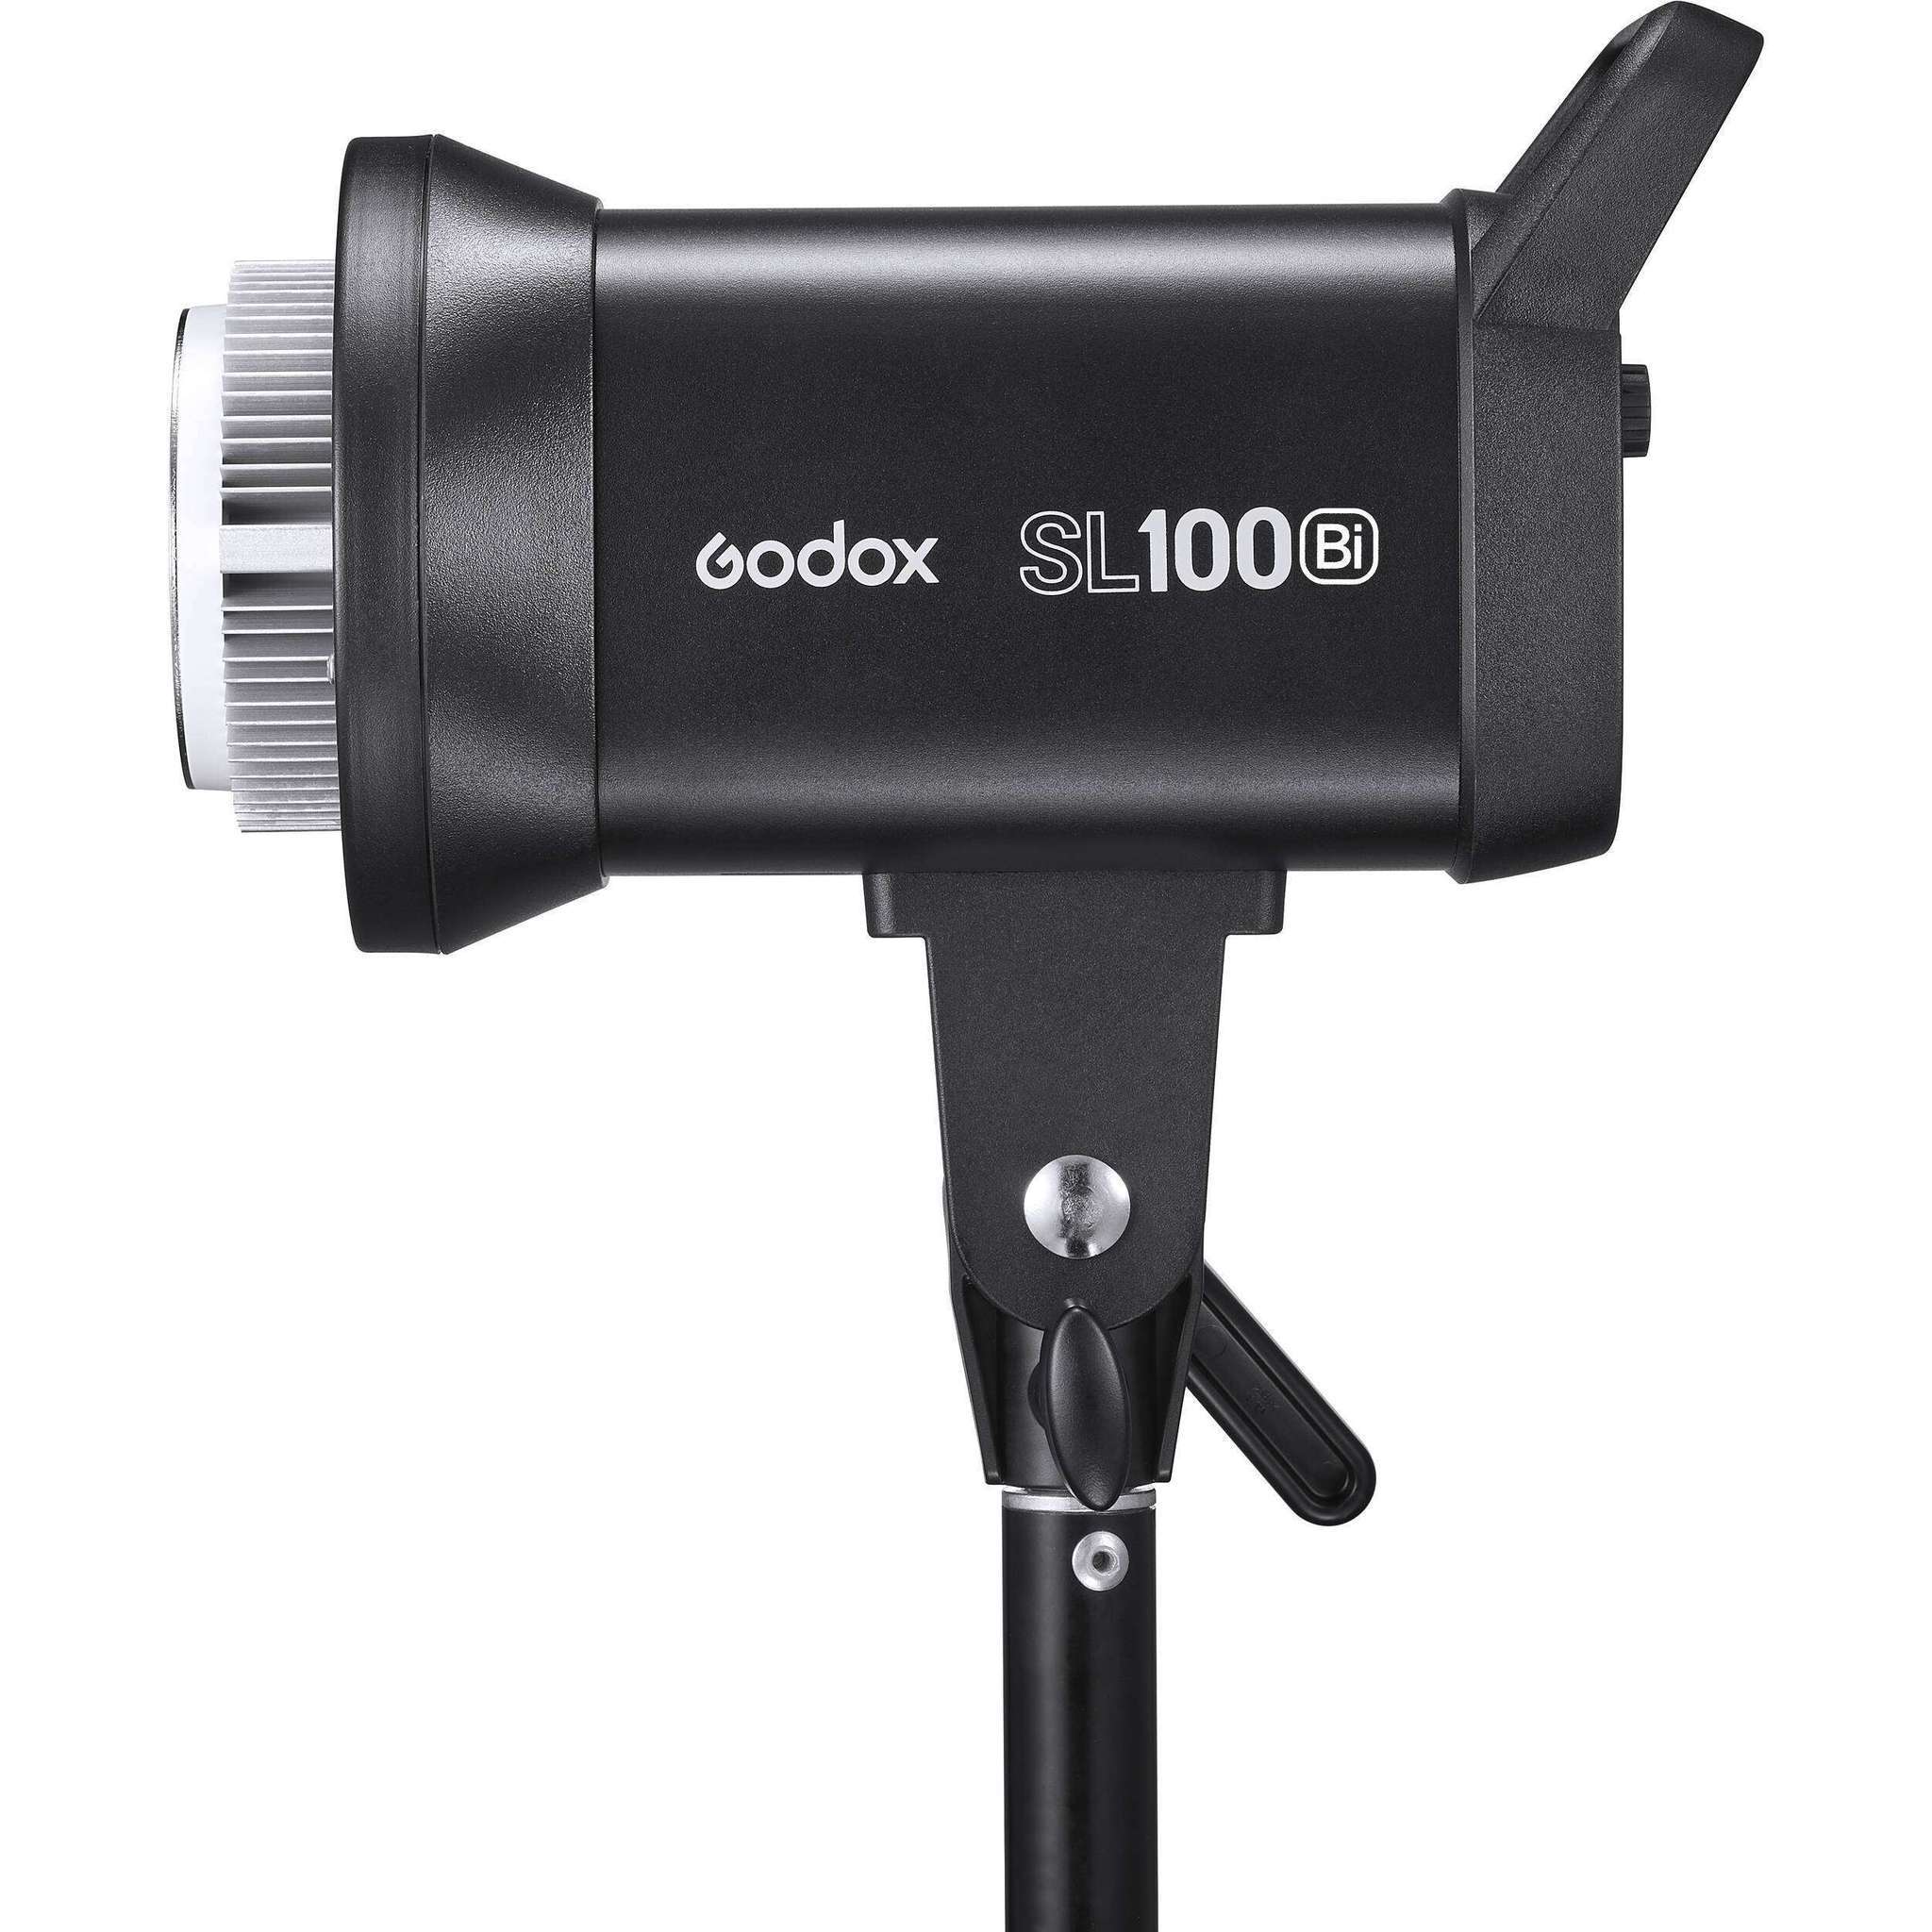    Godox SL100Bi     Ultra-mart